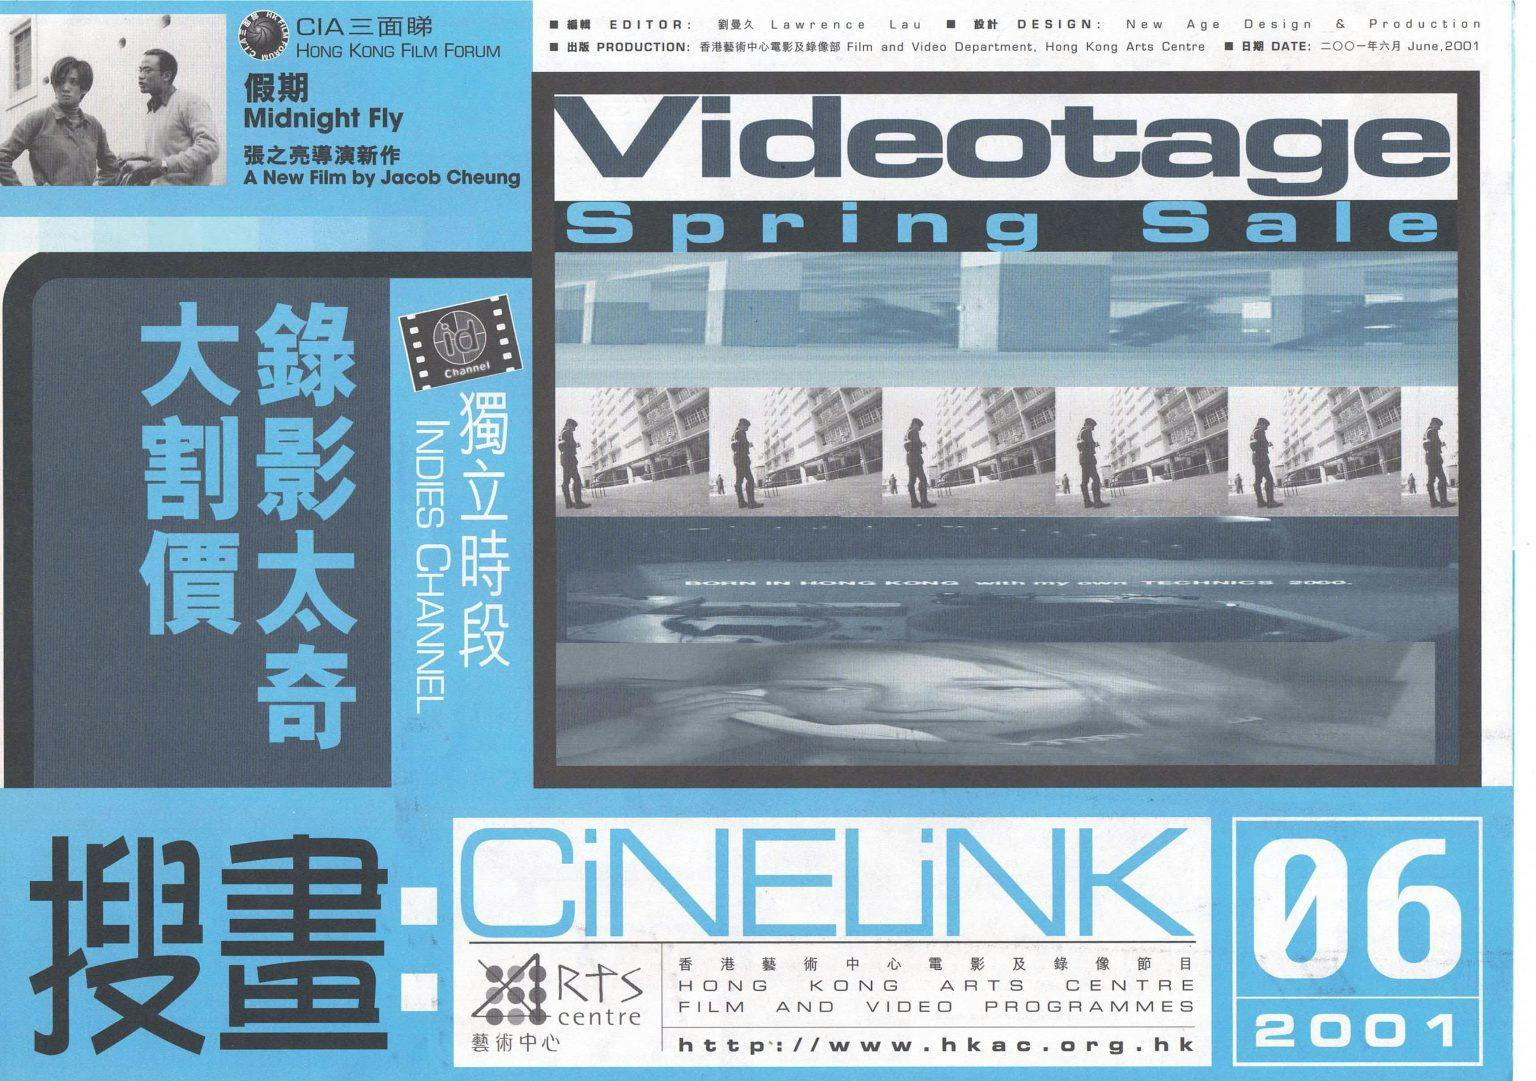 CiNELiNK 06: Videotage Spring Sale 投畫- 錄像太奇大割價